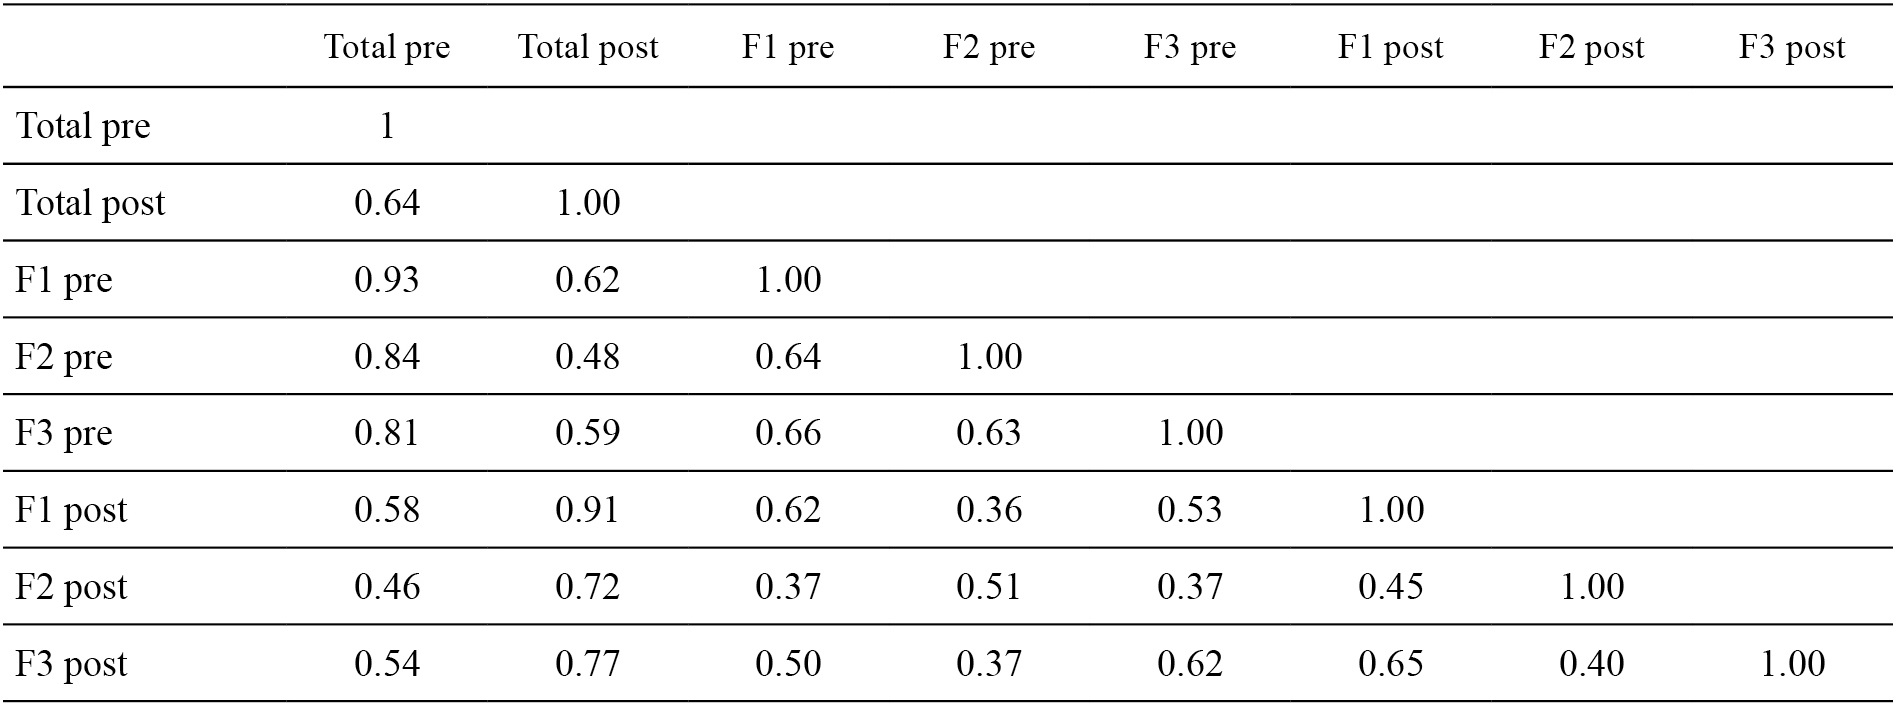 
Coeficientes de correlación entre medidas pre y post, escala DS-II
